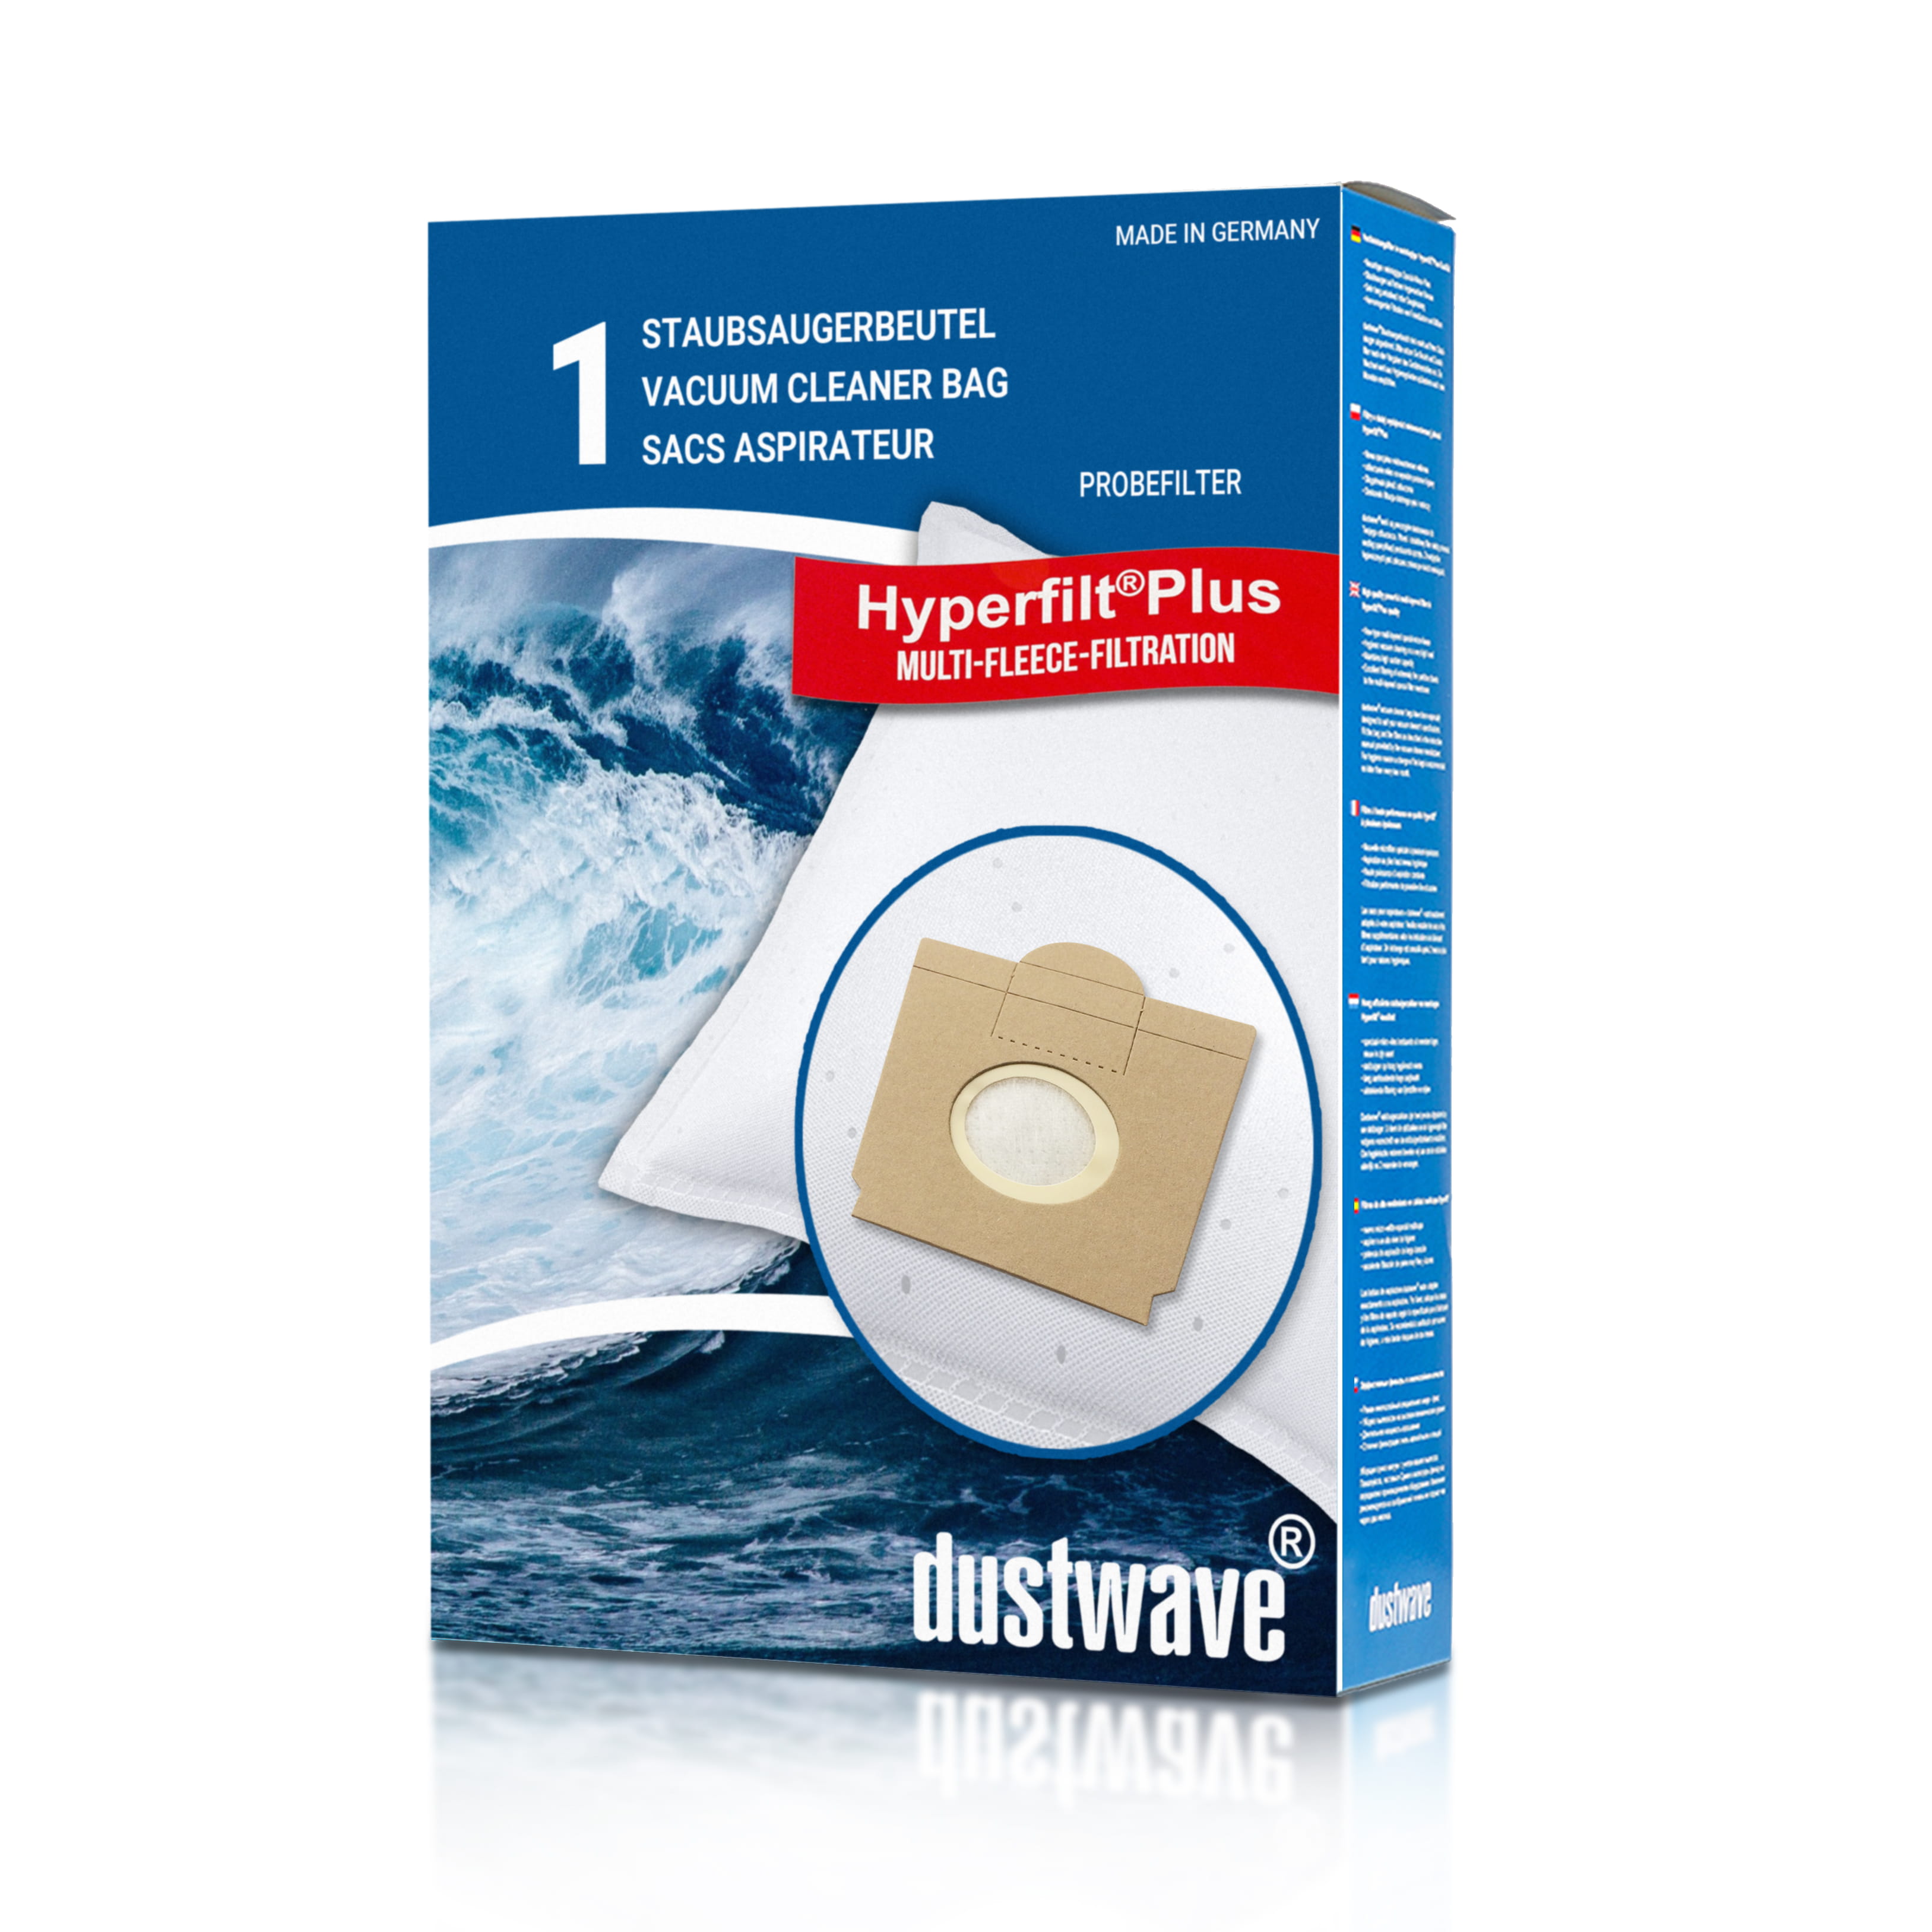 Dustwave® 1 Staubsaugerbeutel für Baur 340.965 / 340-965 - hocheffizient mit Hygieneverschluss - Made in Germany